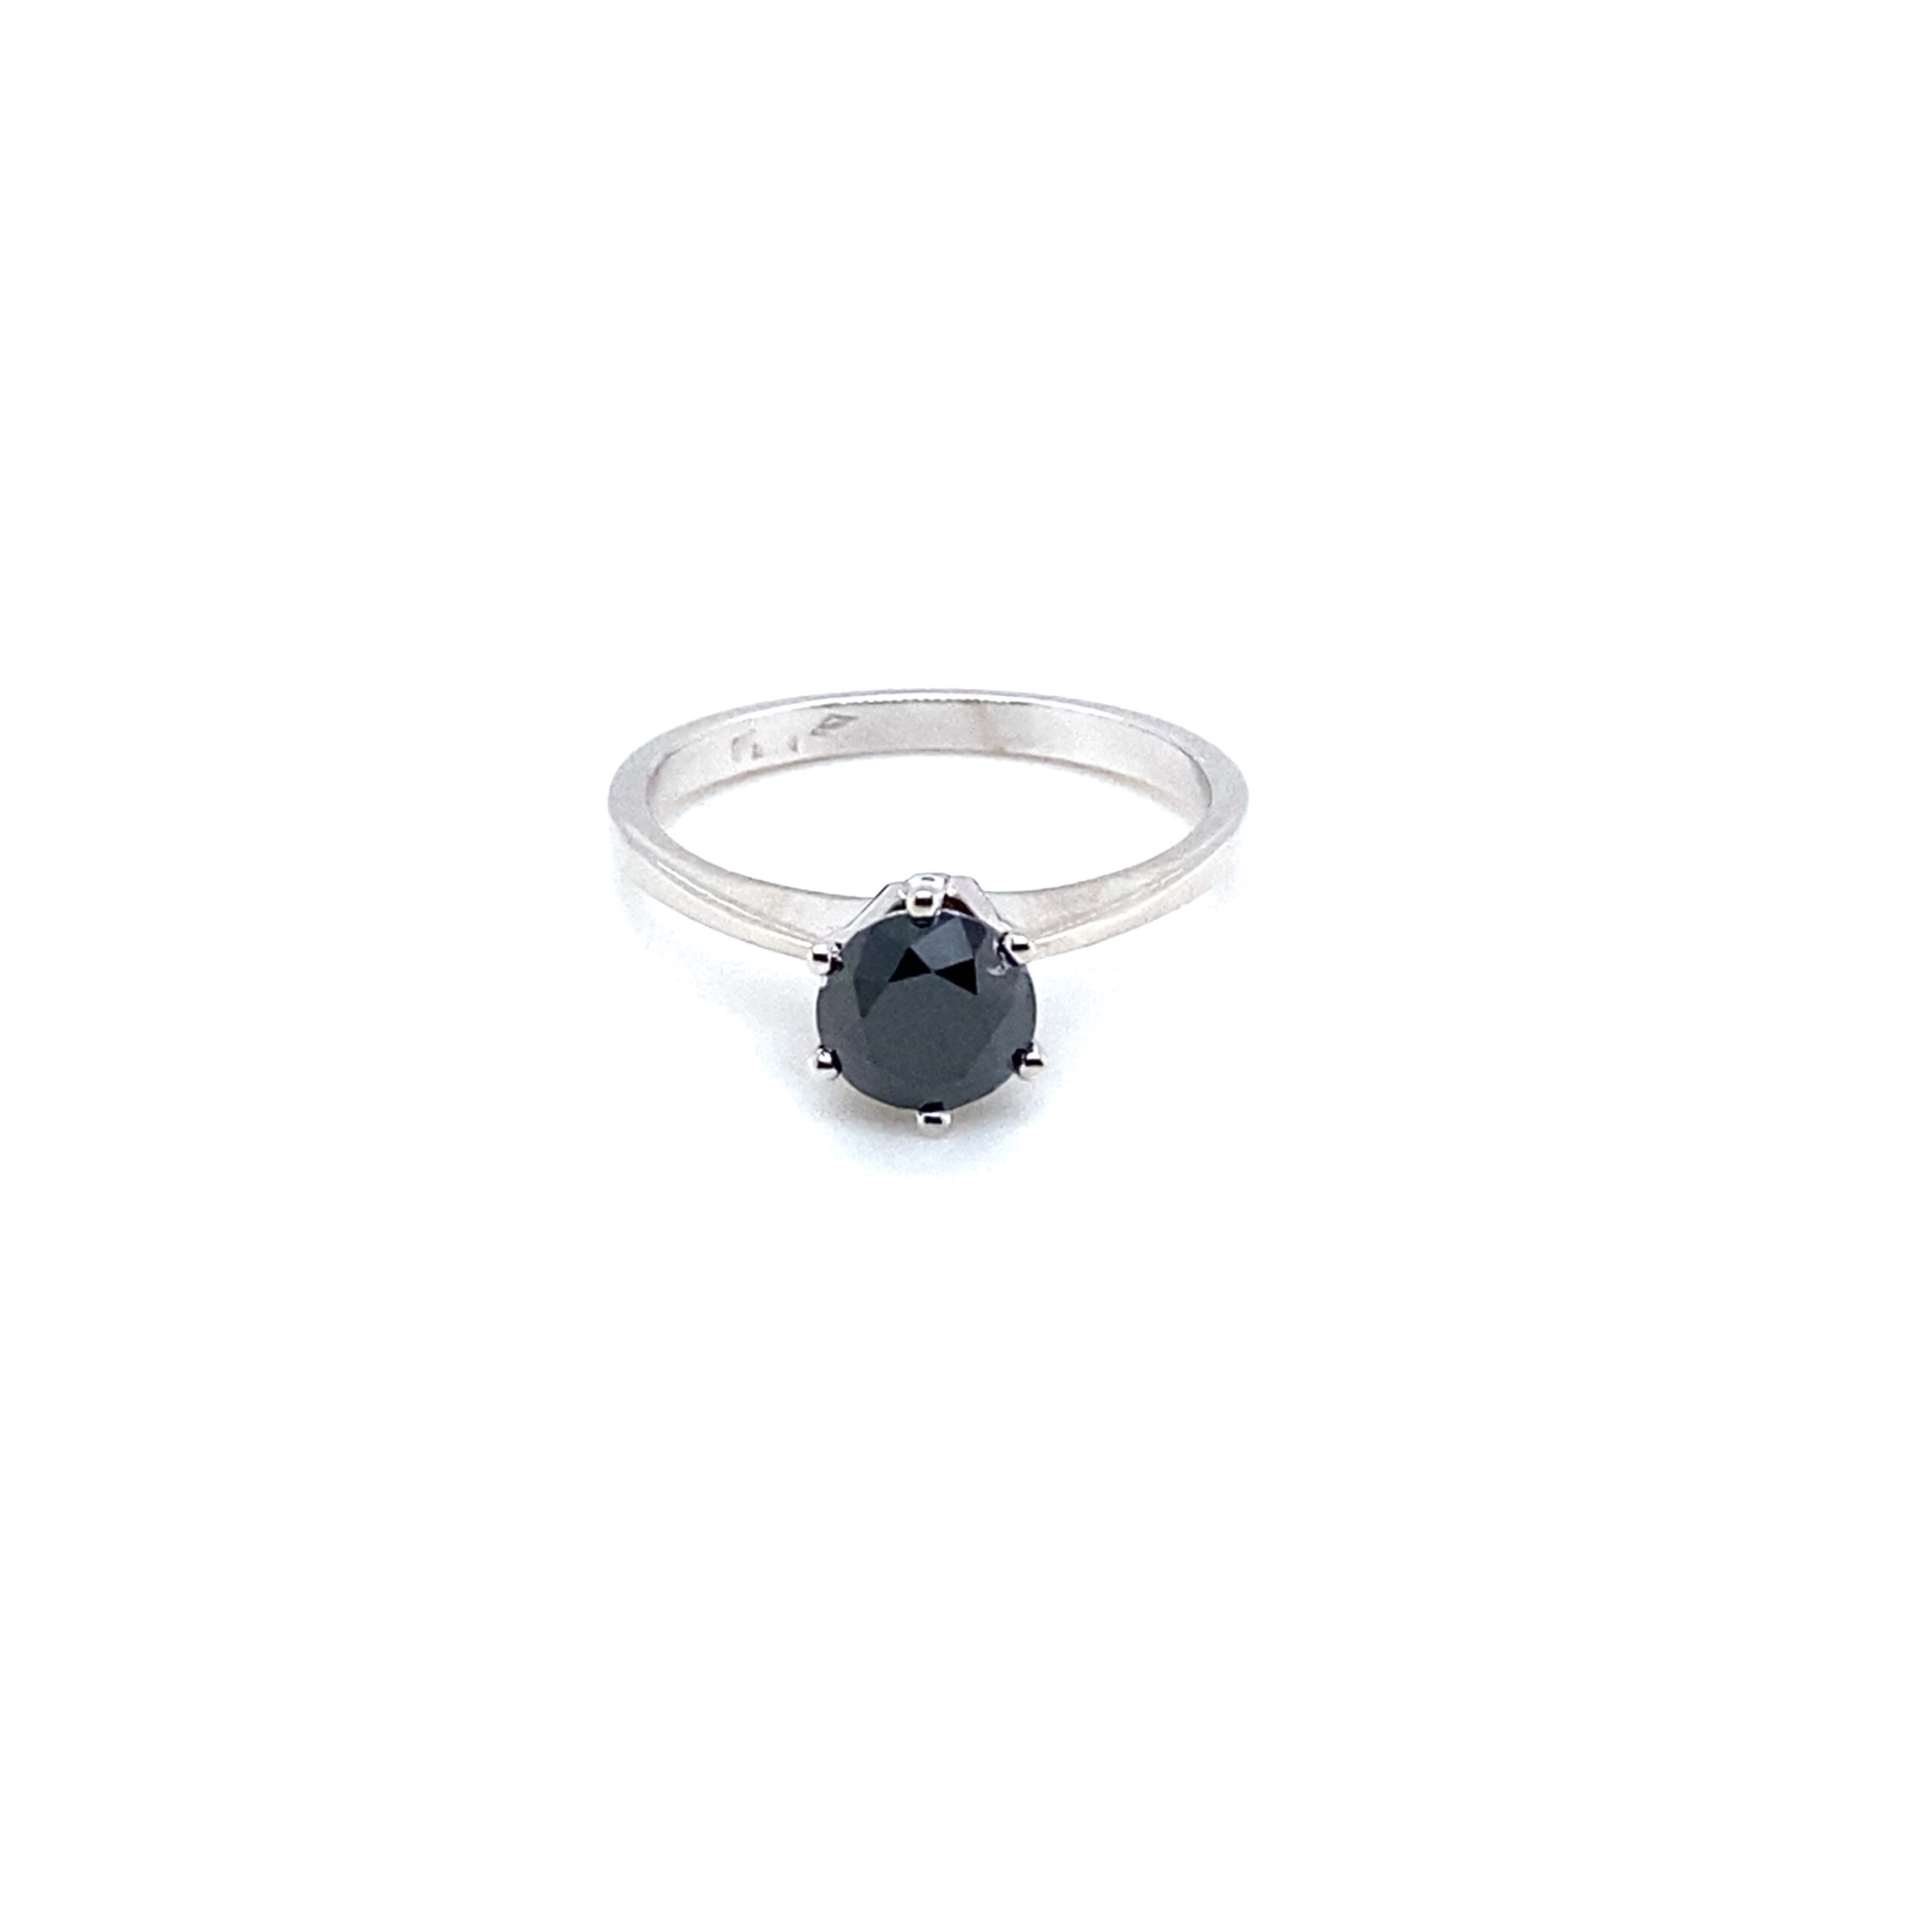 Pijl verkoper plaats Witgouden ring met zwarte diamant | Juwelier de Tijd